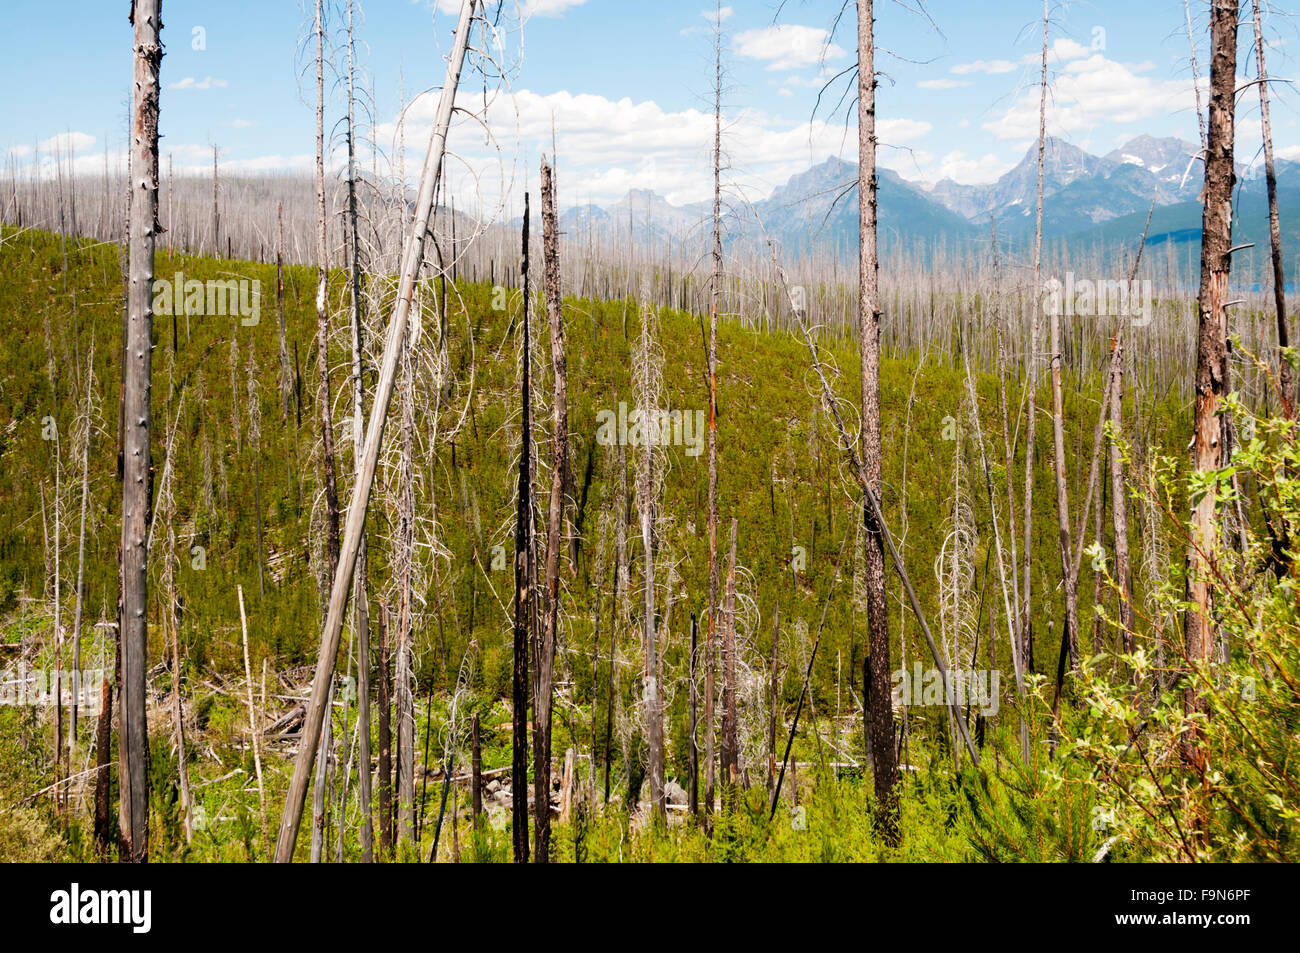 Nuevo crecimiento que aparecen a través de restos de árboles muertos quemados en el Robert fuego de 2003. El parque nacional de Glacier, Montana, EE.UU. Foto de stock